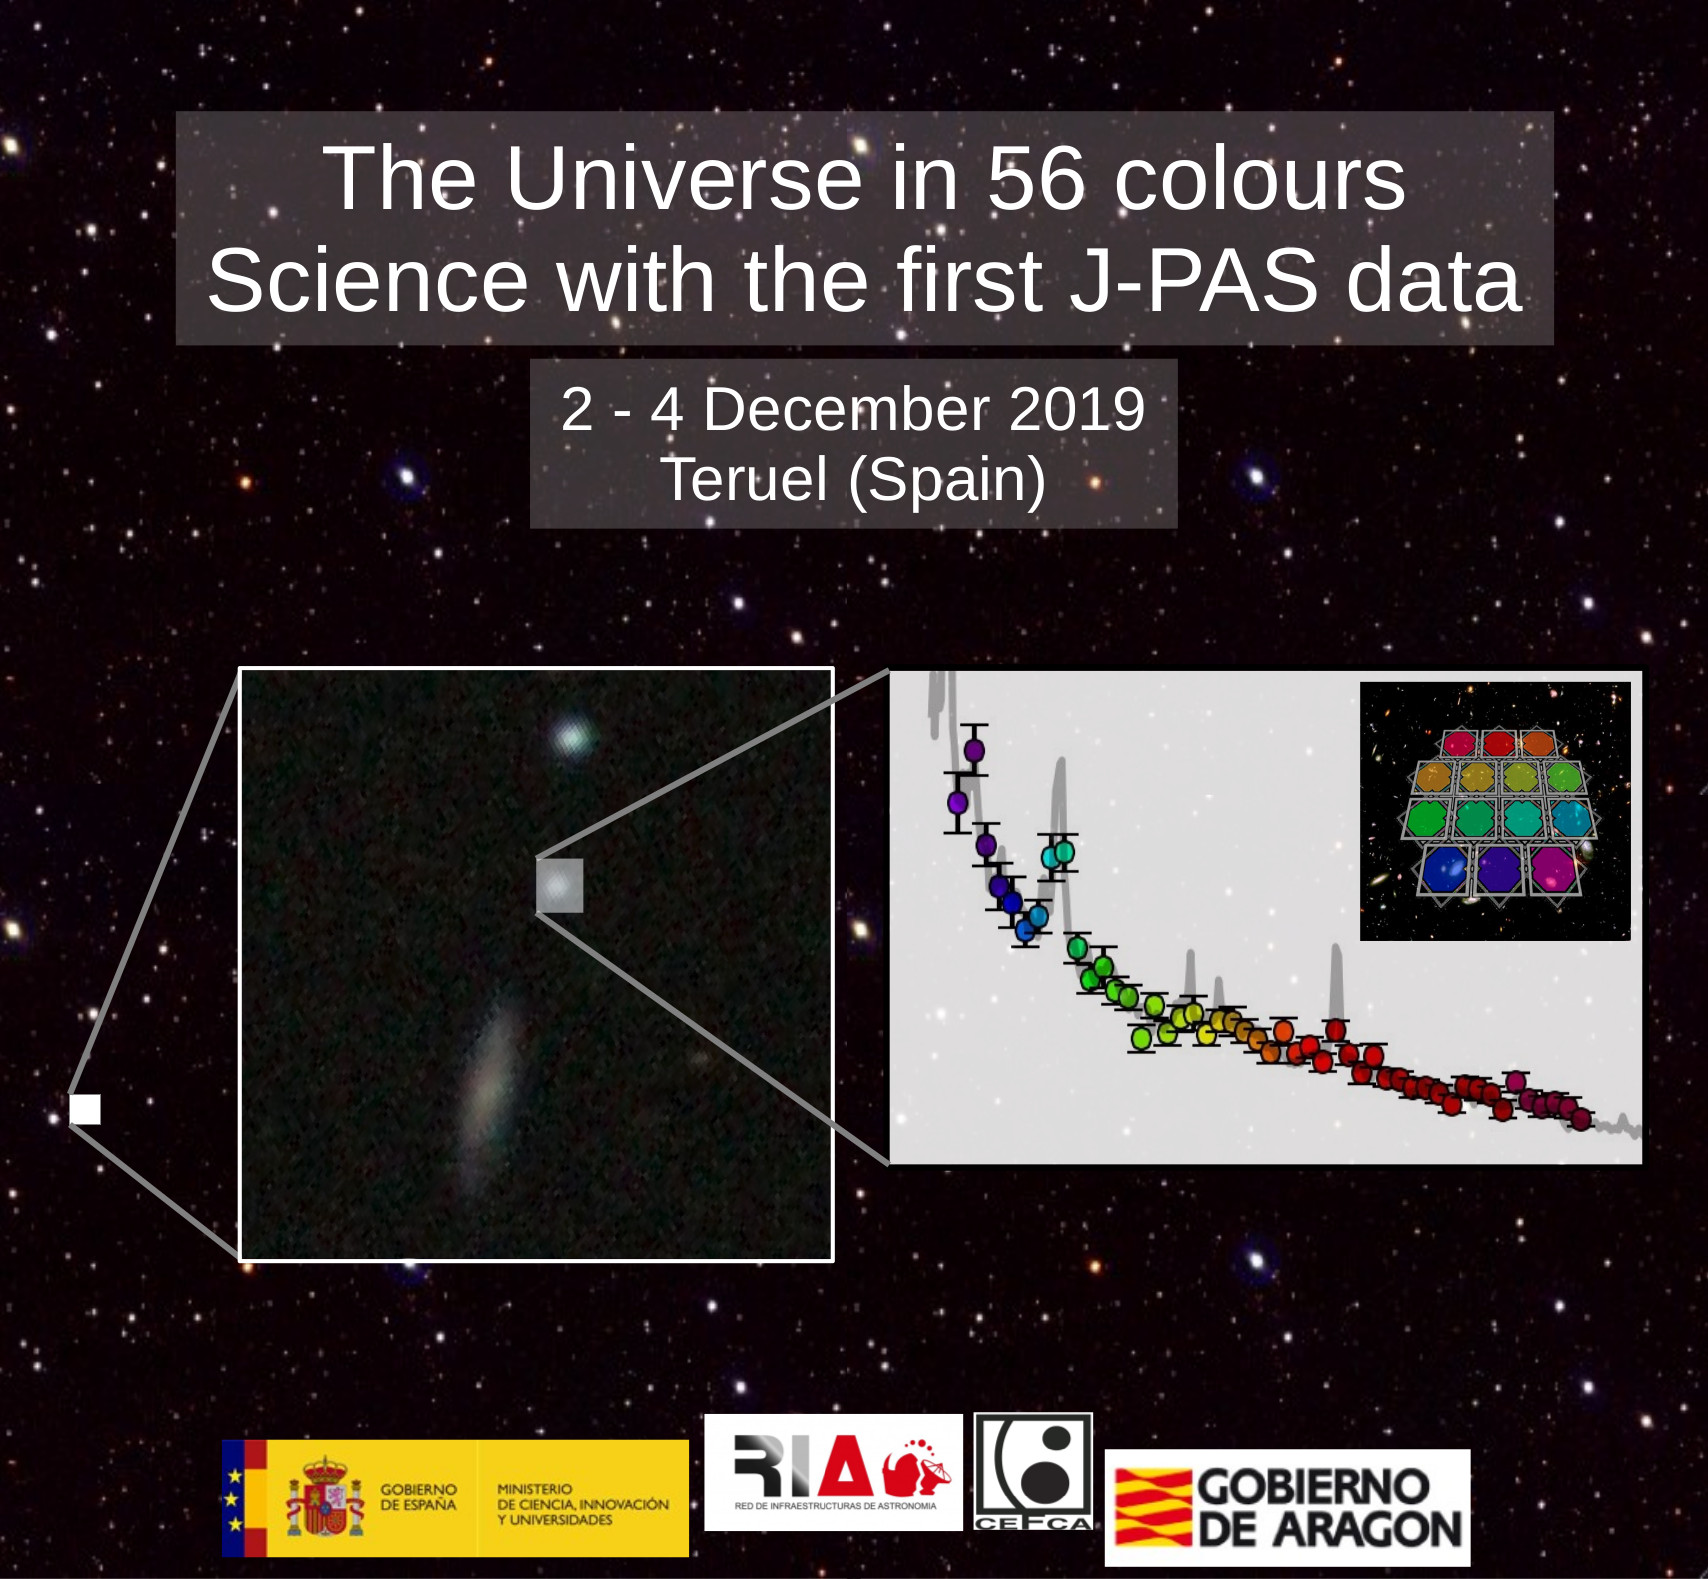 https://riastronomia.es/el-universo-en-56-colores-ciencia-con-los-primeros-datos-de-j-pas/